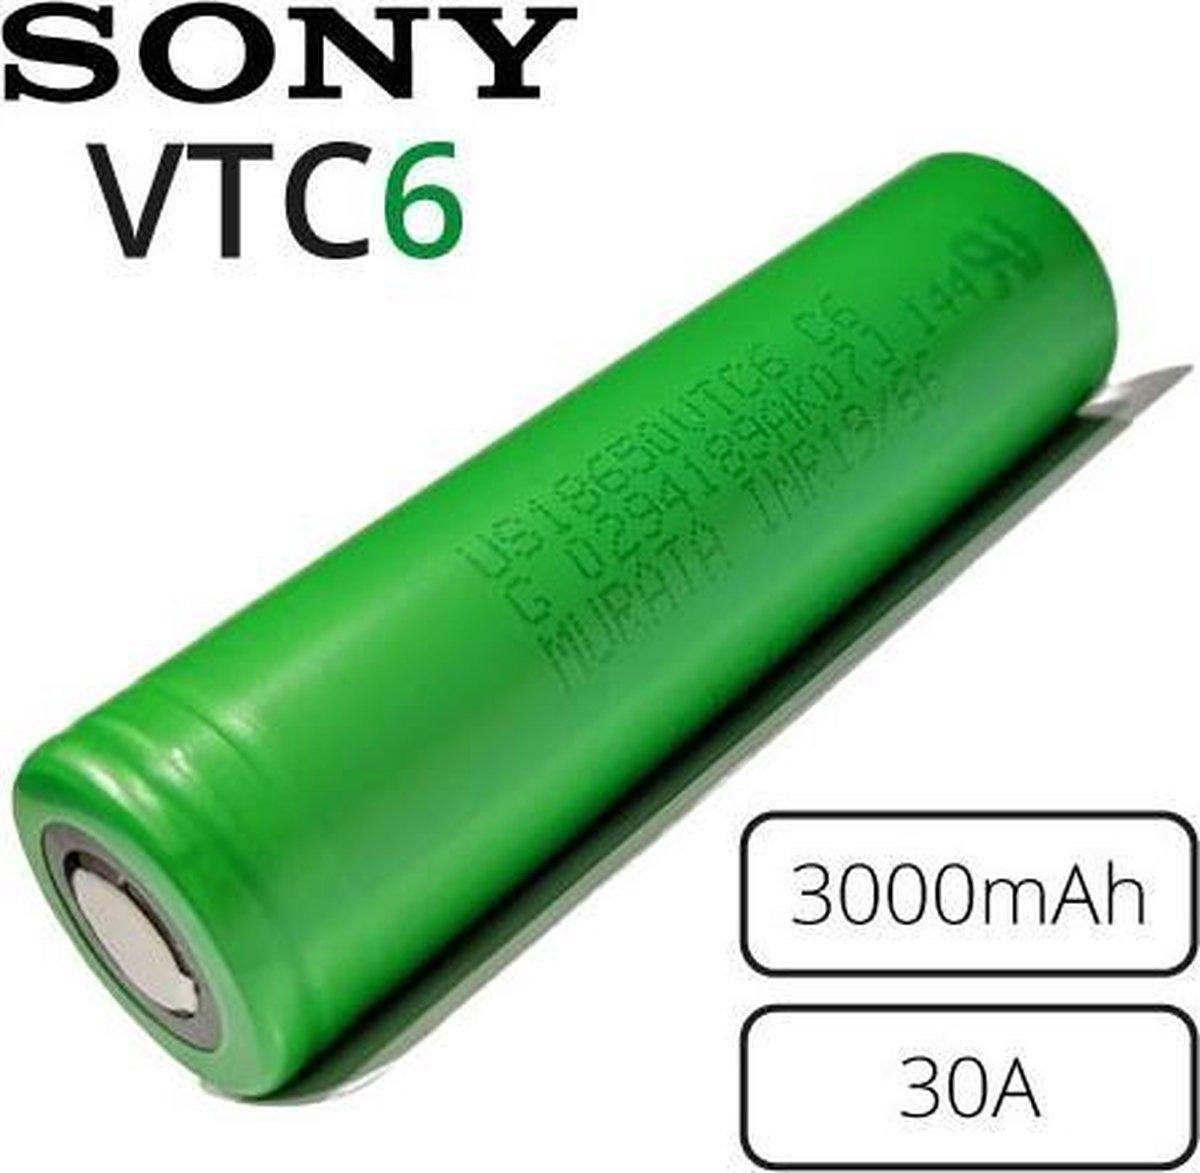 Sony -Flat Top - VTC6 US - 18650 batterij - 3000mAh - 30A - 3.7V